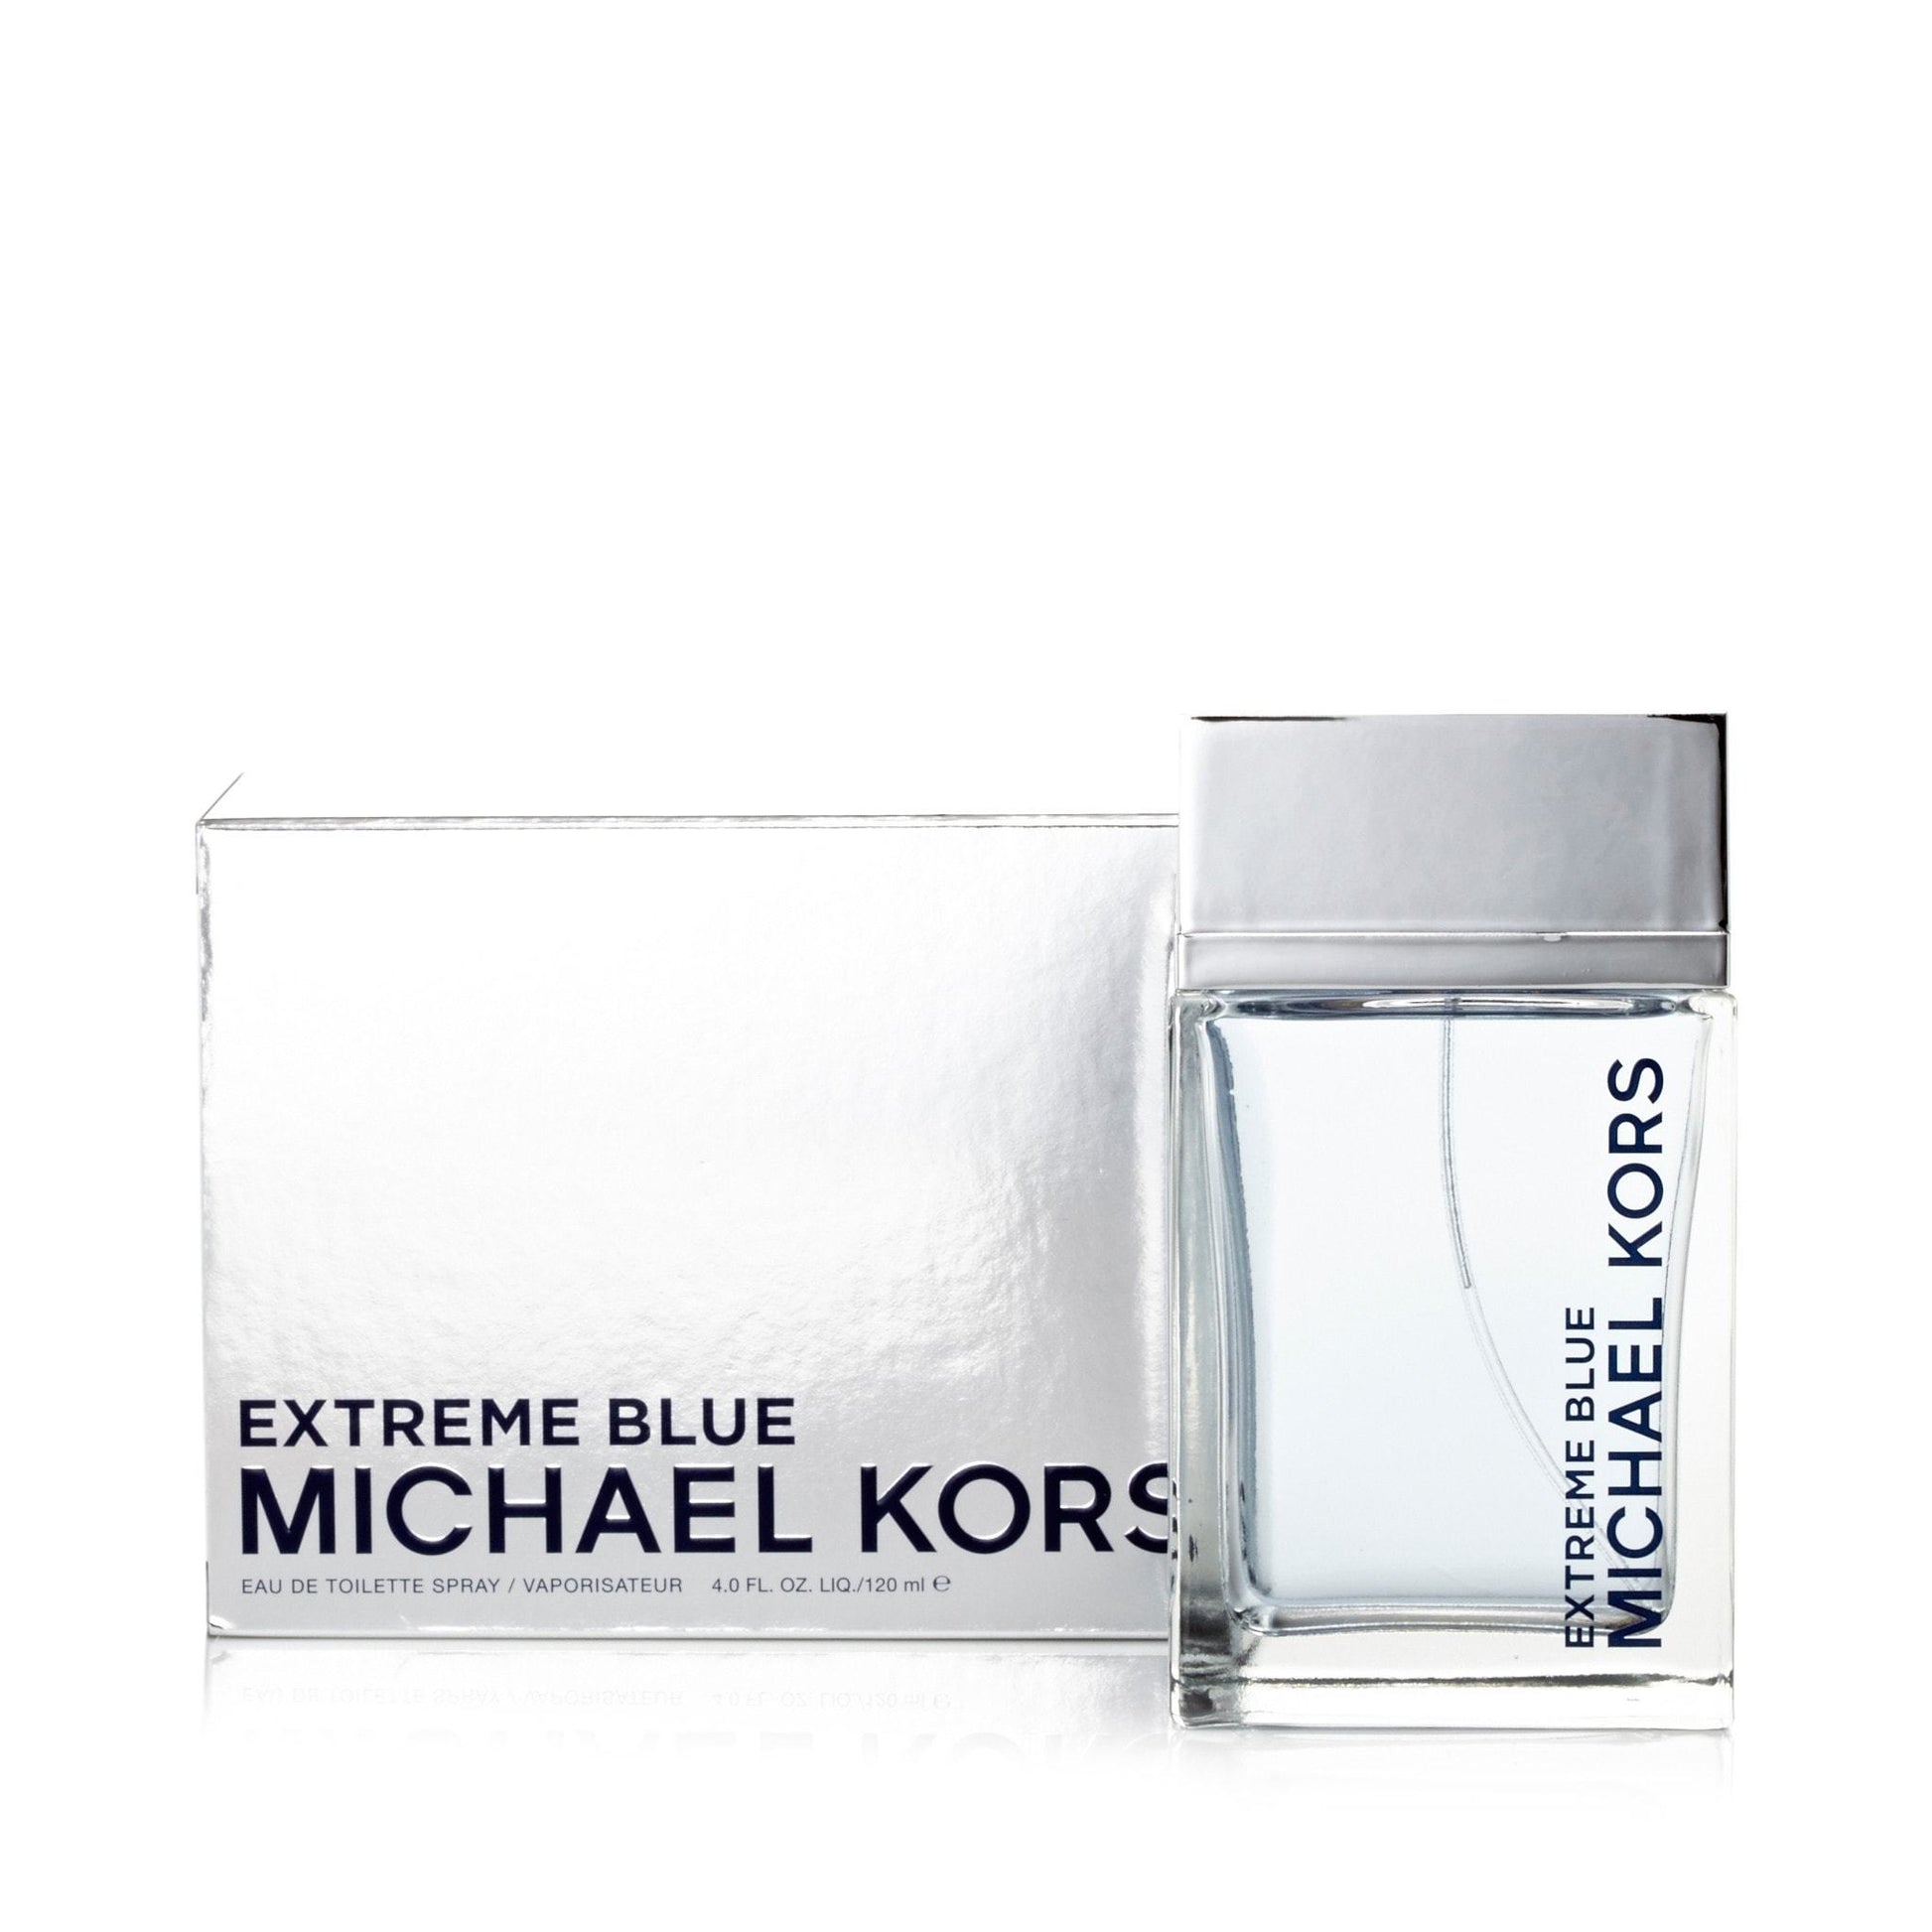 Extreme Blue Eau de Toilette Spray for Men by Michael Kors, Product image 6